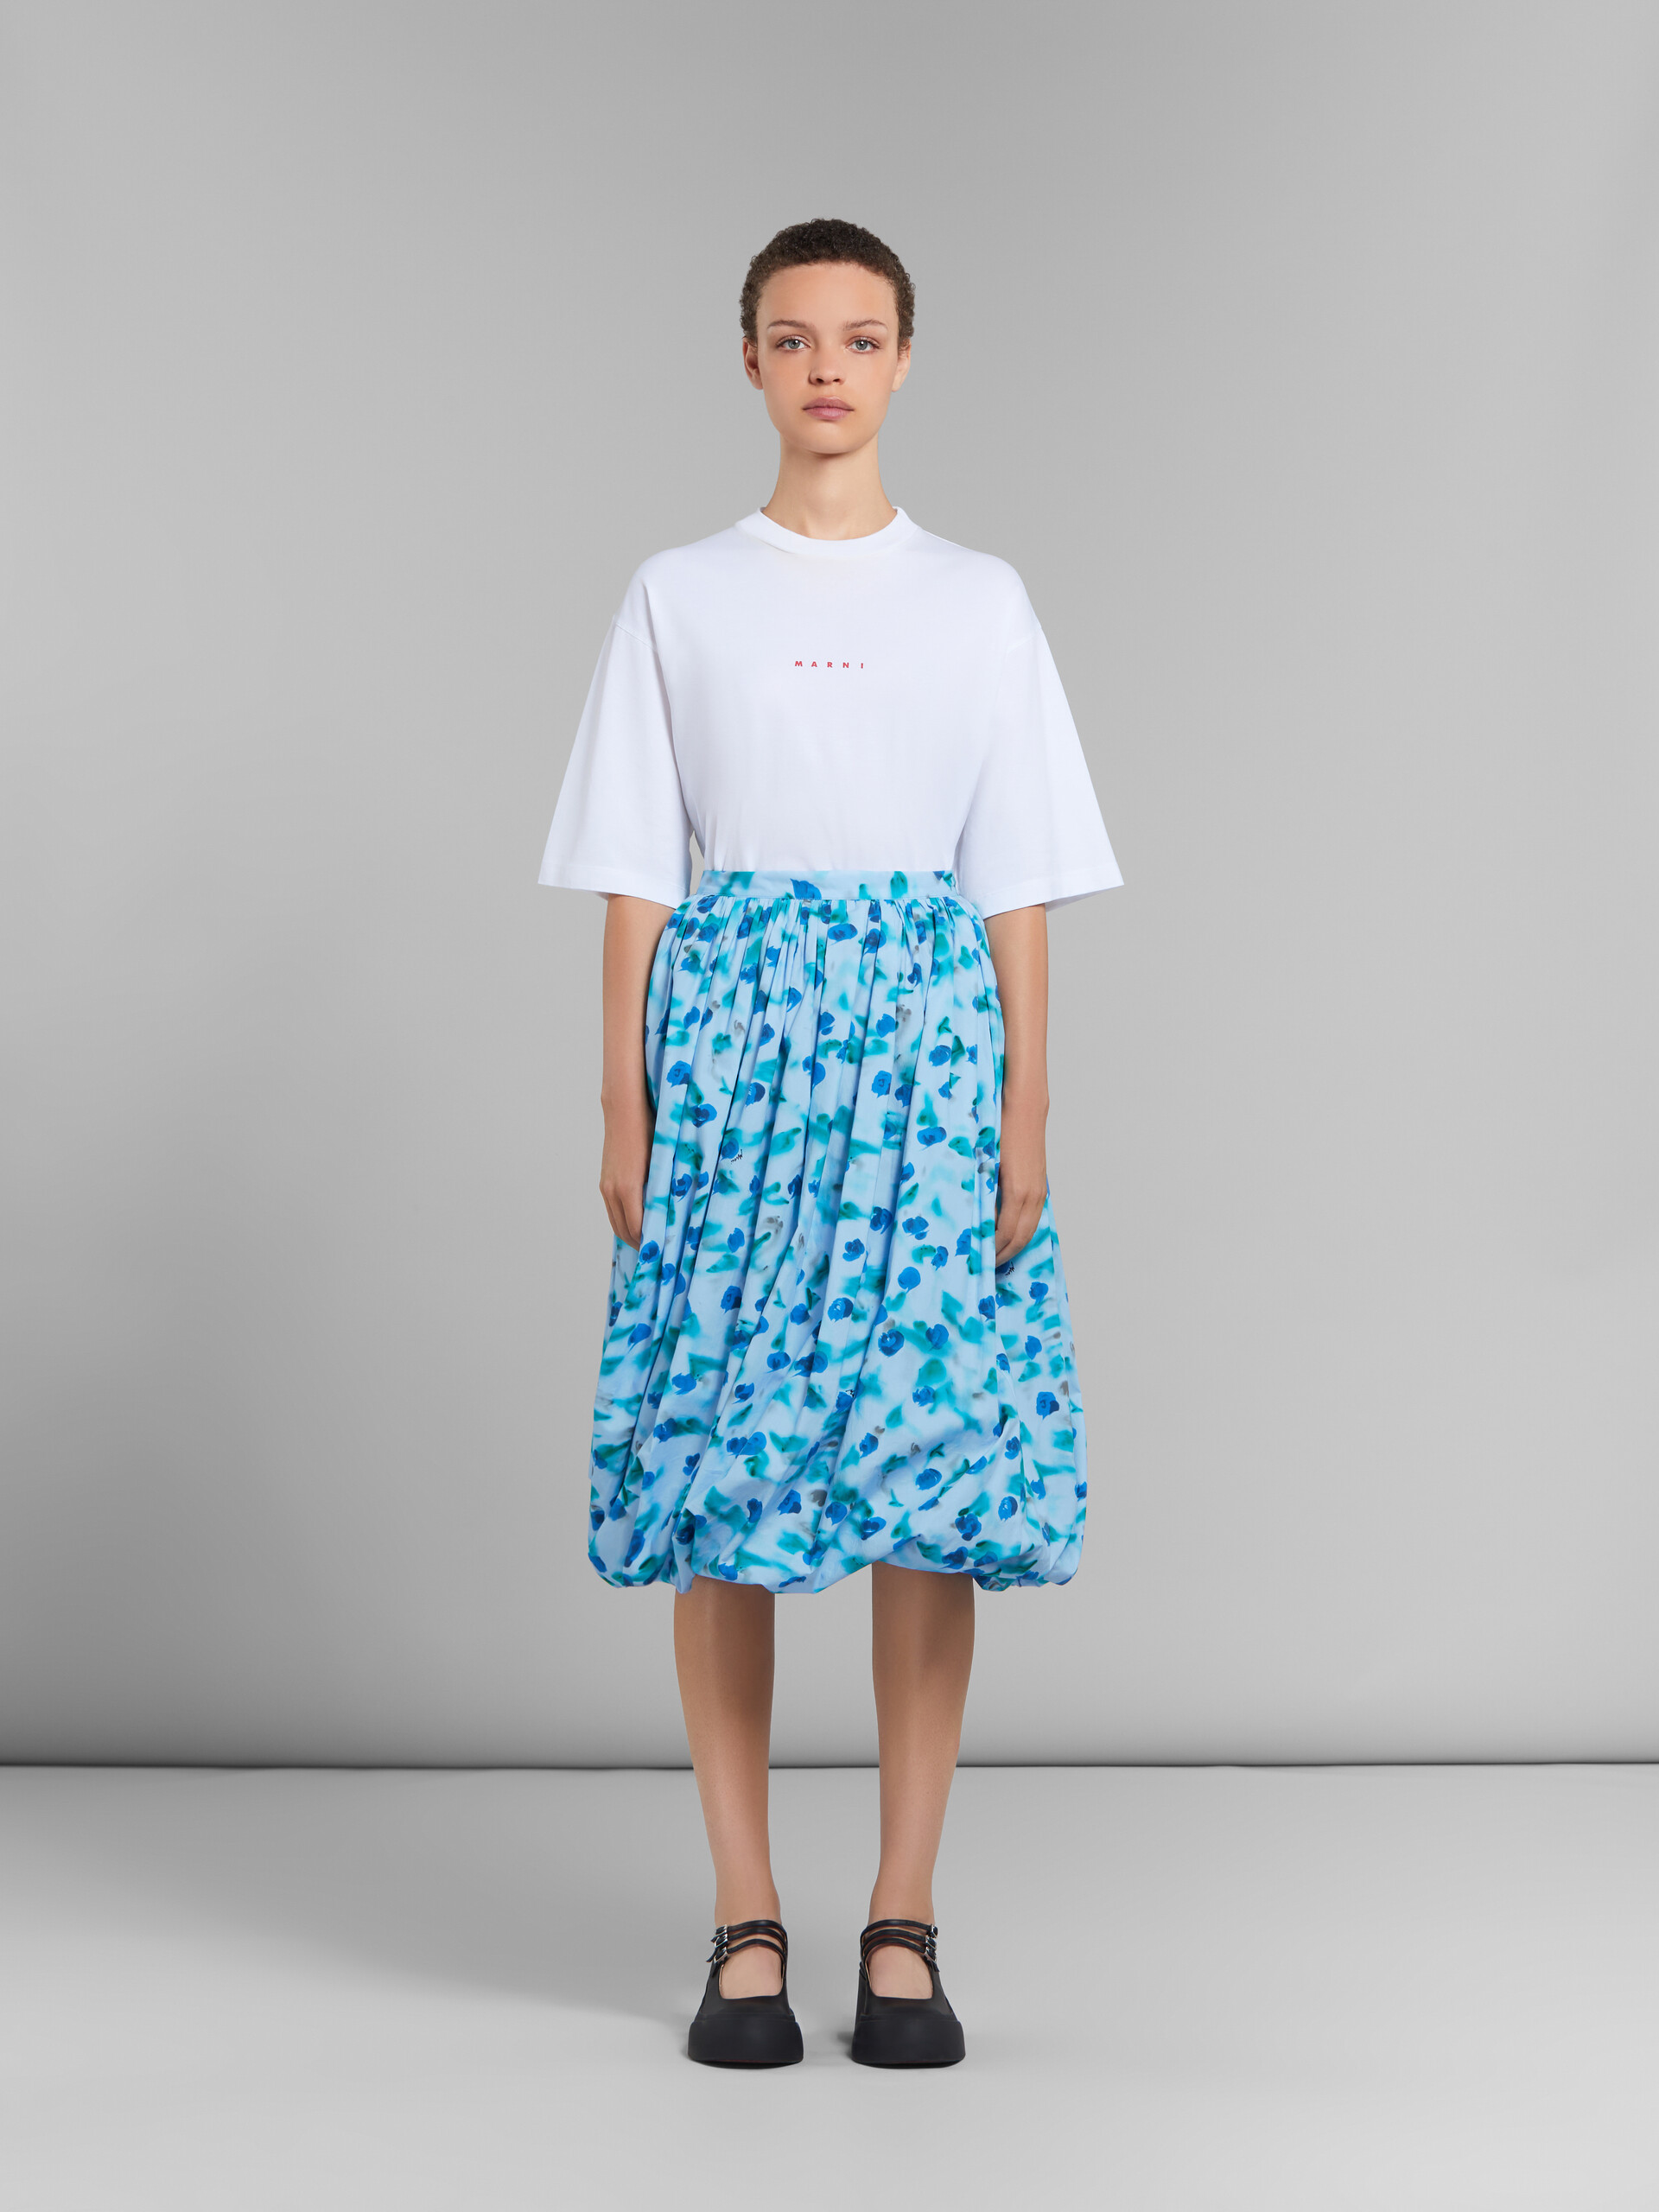 Light blue poplin balloon midi skirt with Reverie print - Skirts - Image 2